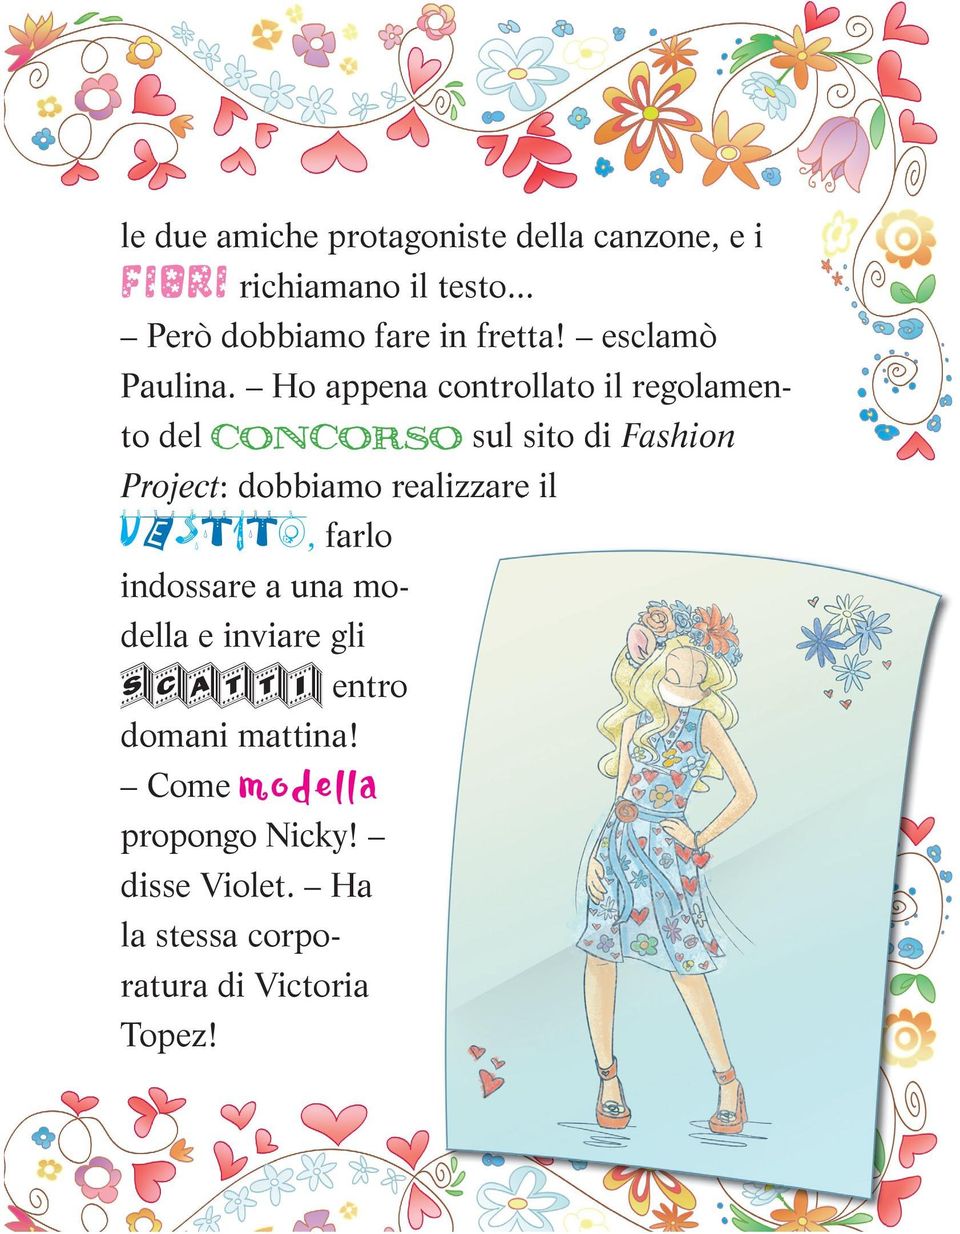 Ho appena controllato il regolamento del CONCORSO sul sito di Fashion Project:: dobbiamo realizzare il